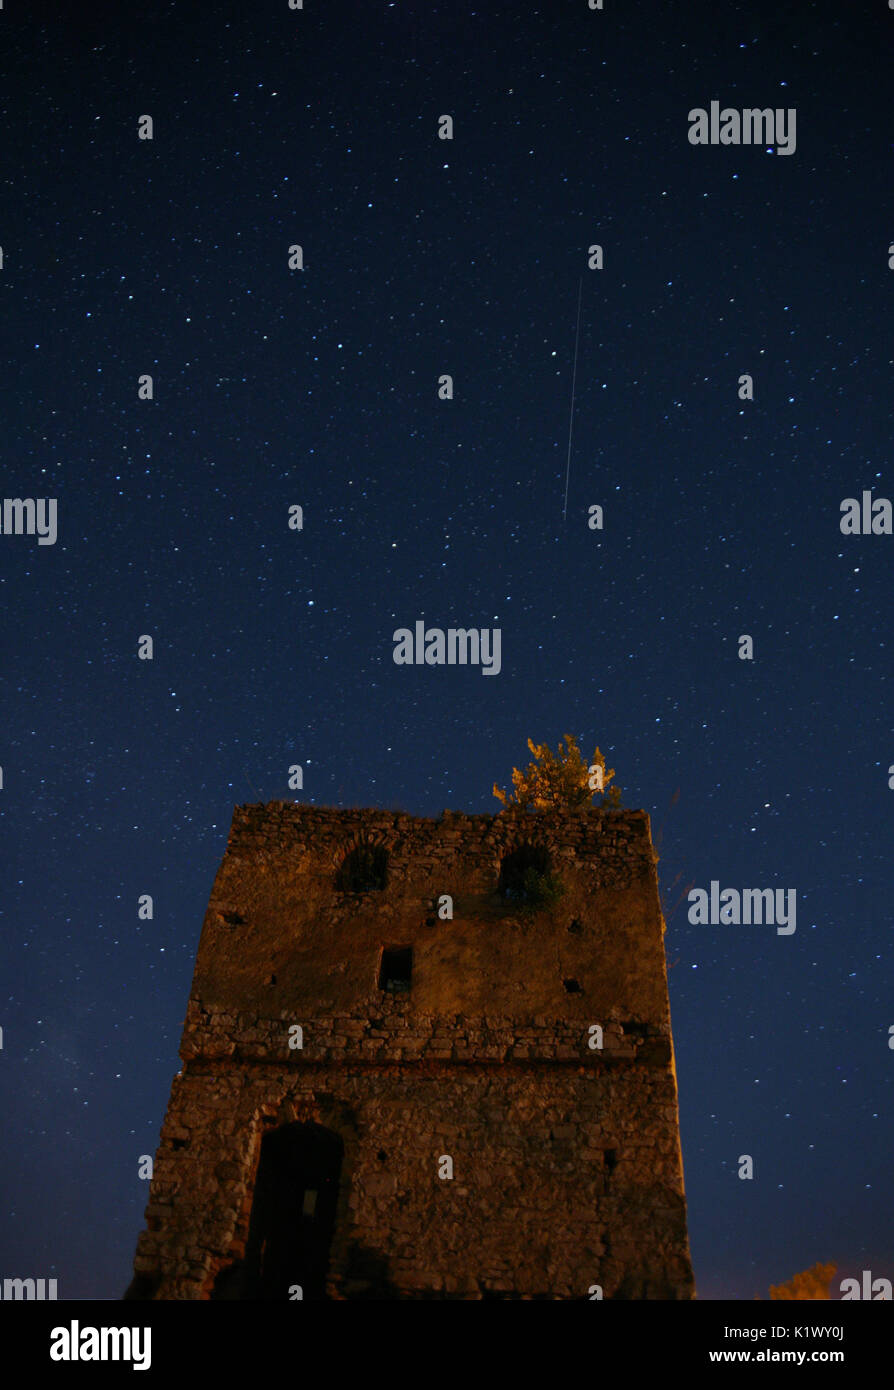 Nacht Sternenhimmel über einem verlassenen Turm. Eine Sternschnuppe ist sichtbar. Eine tiefe dunkle Nacht. Stockfoto